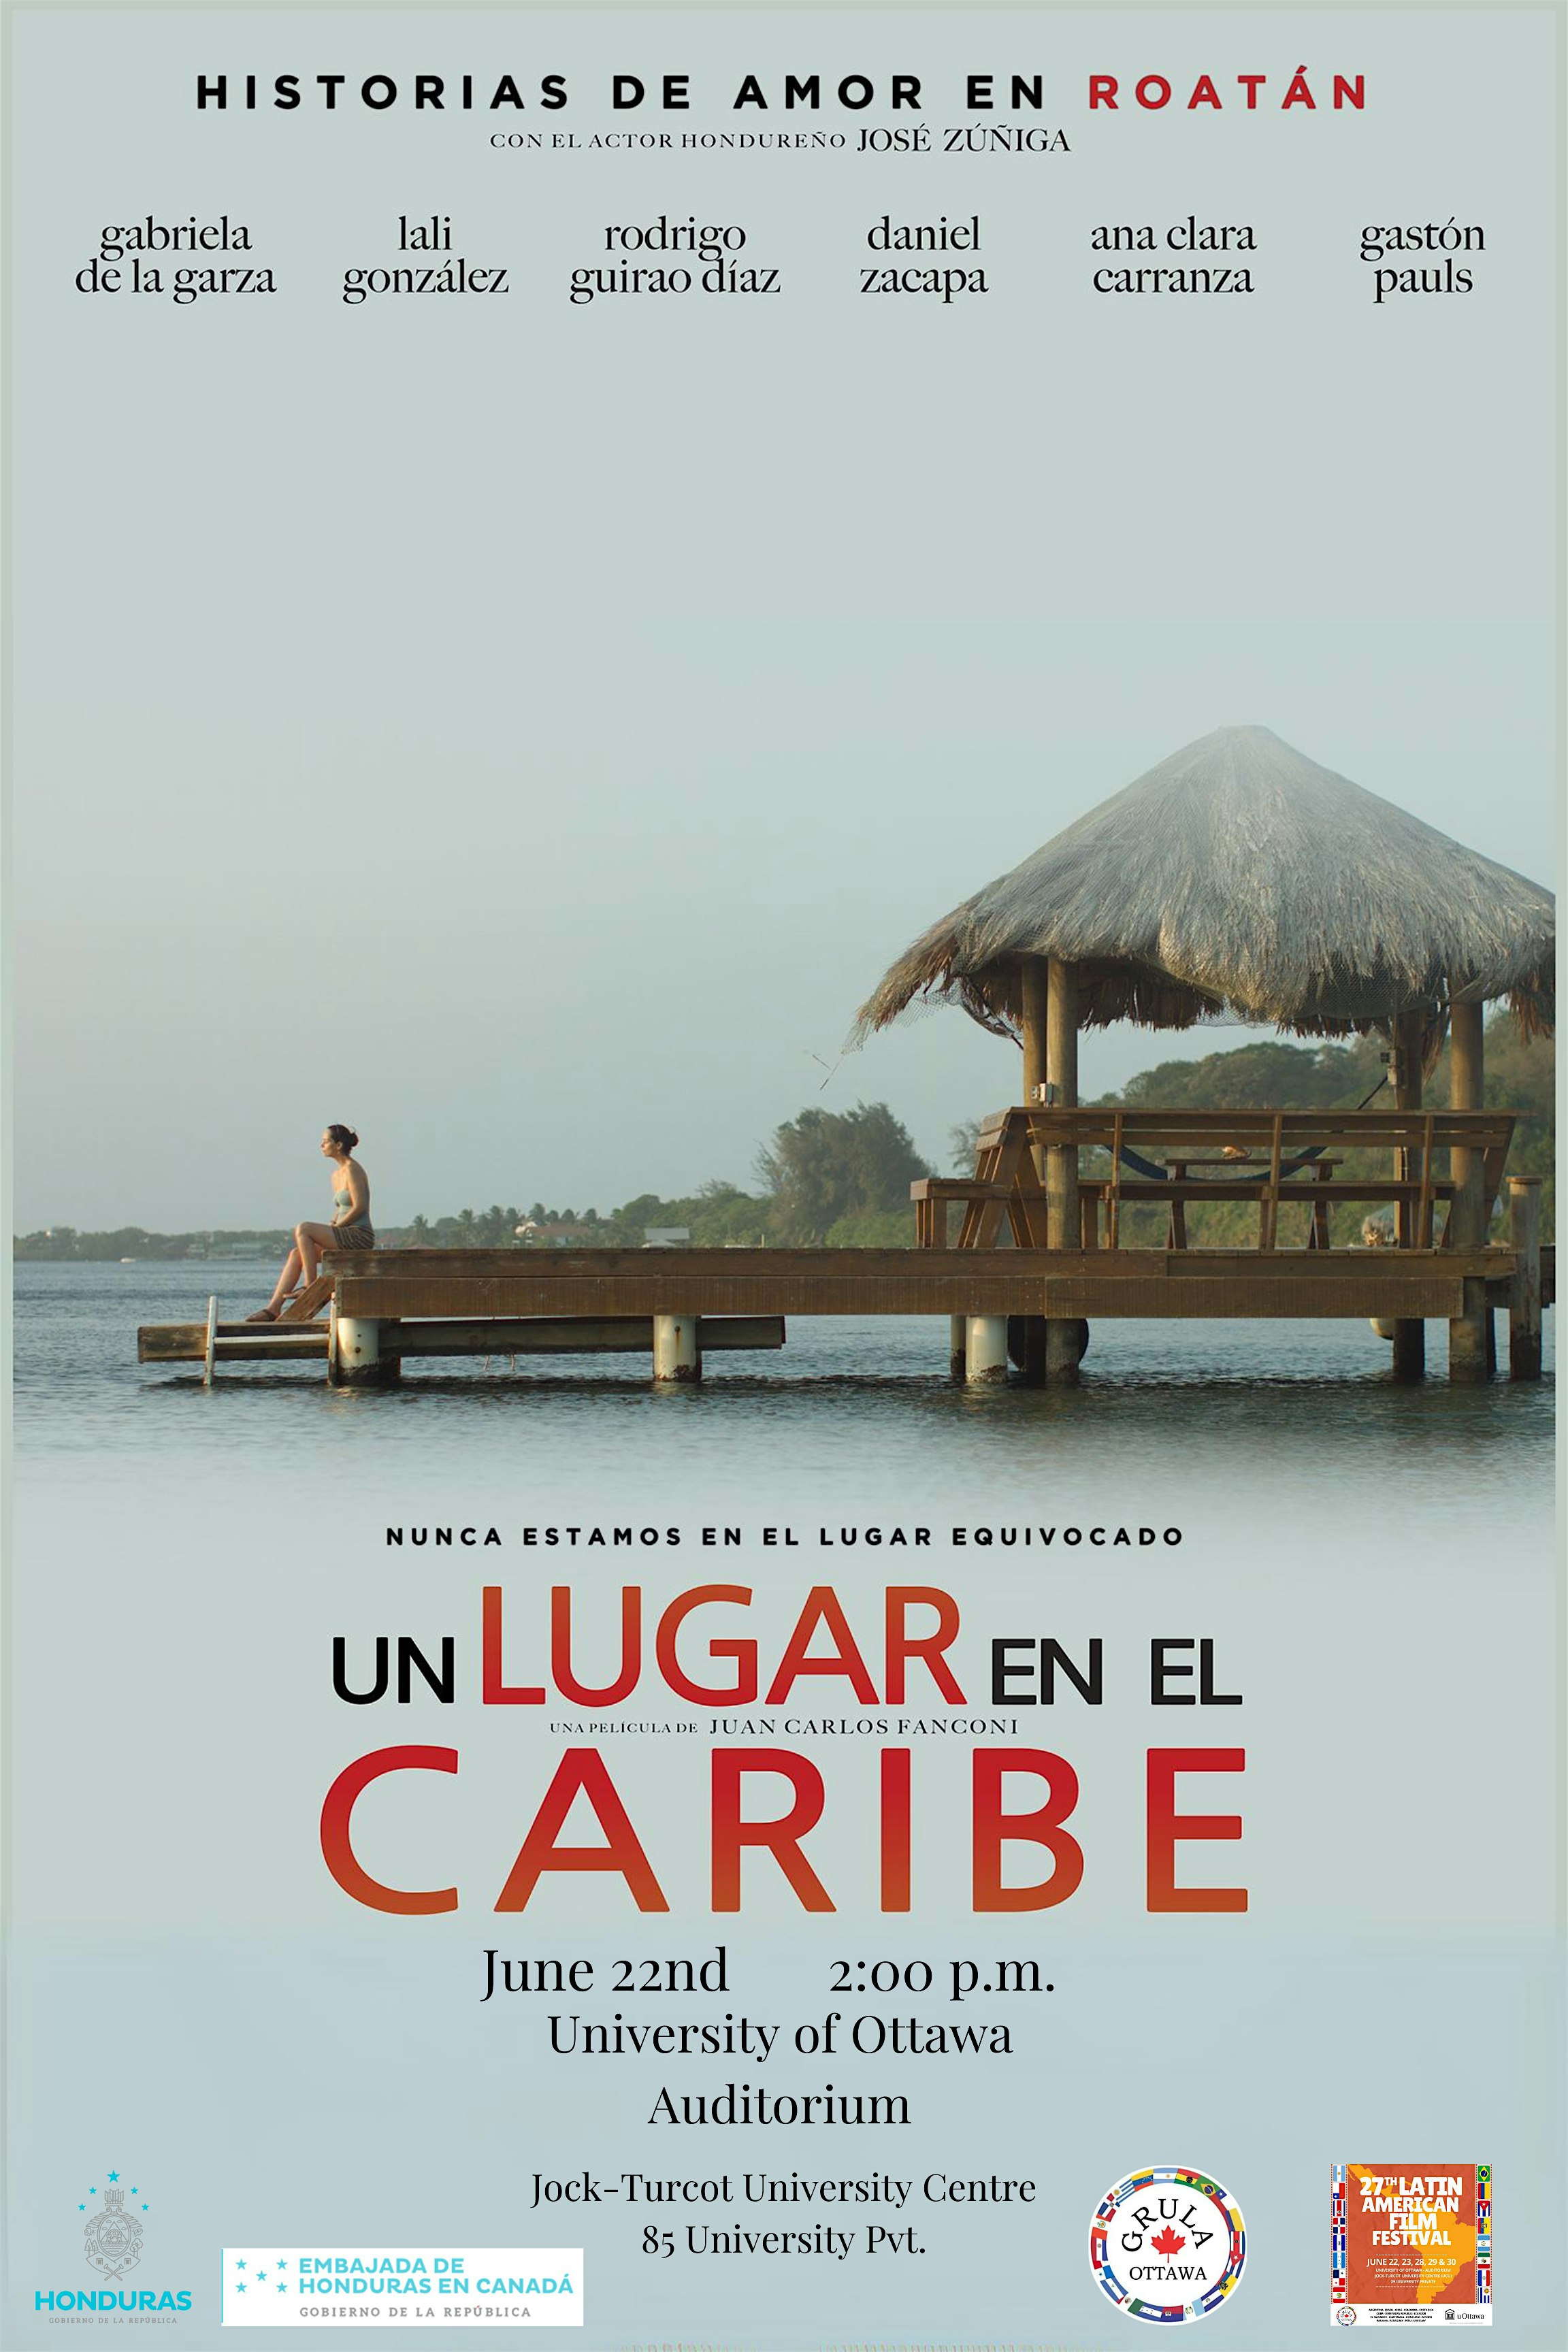 Honduras' movie screening "Un Lugar en el Caribe" by Juan Carlos Fanconi